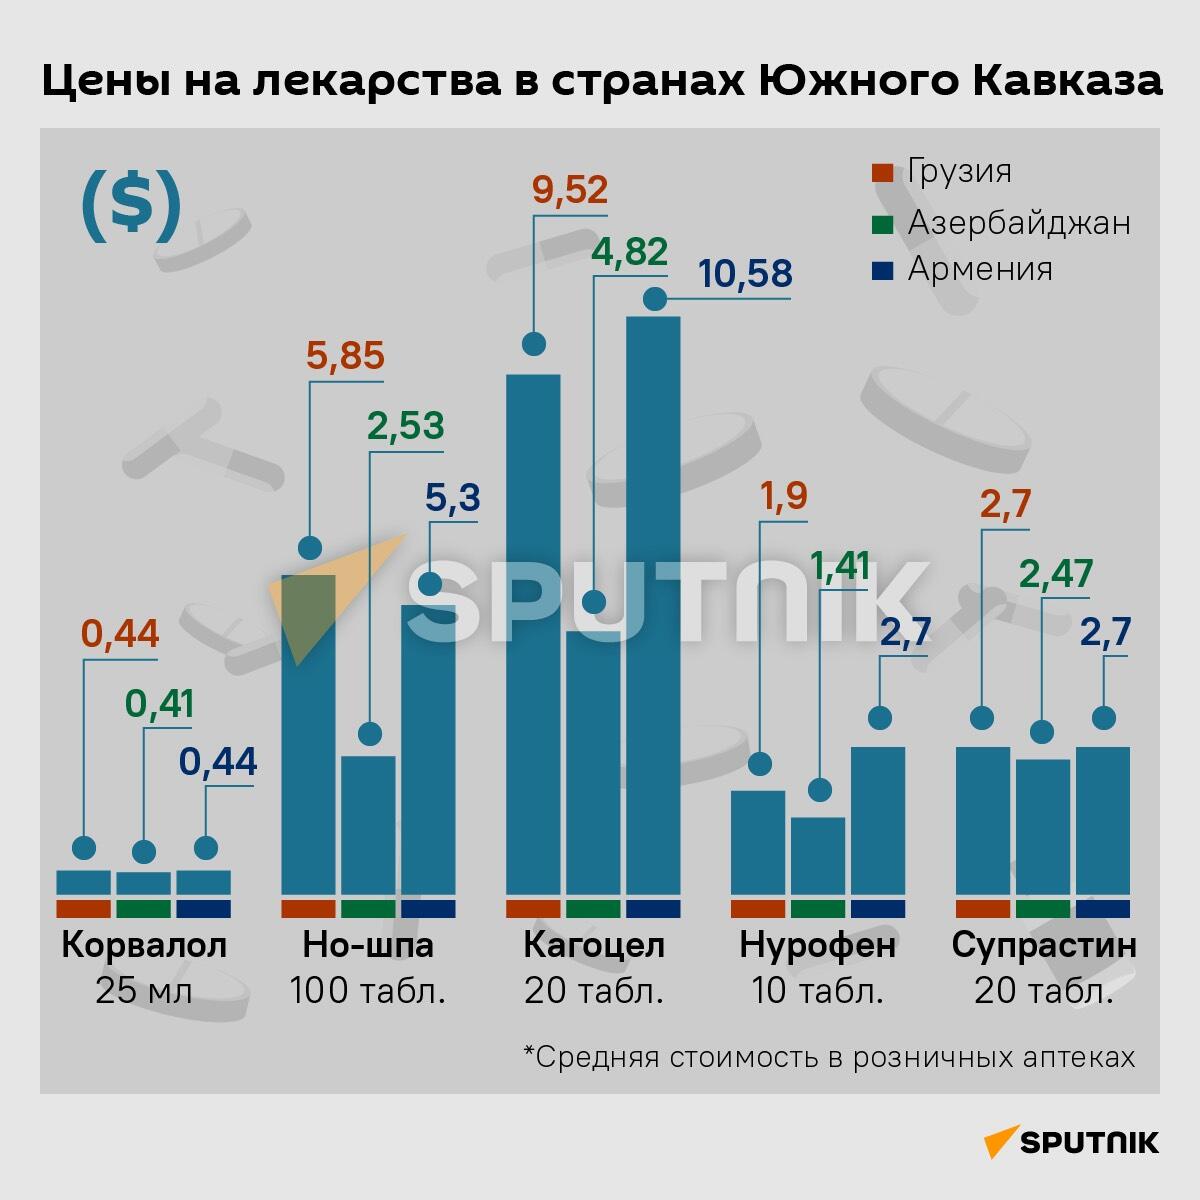 Цены на лекарства в странах Южного Кавказа - Sputnik Грузия